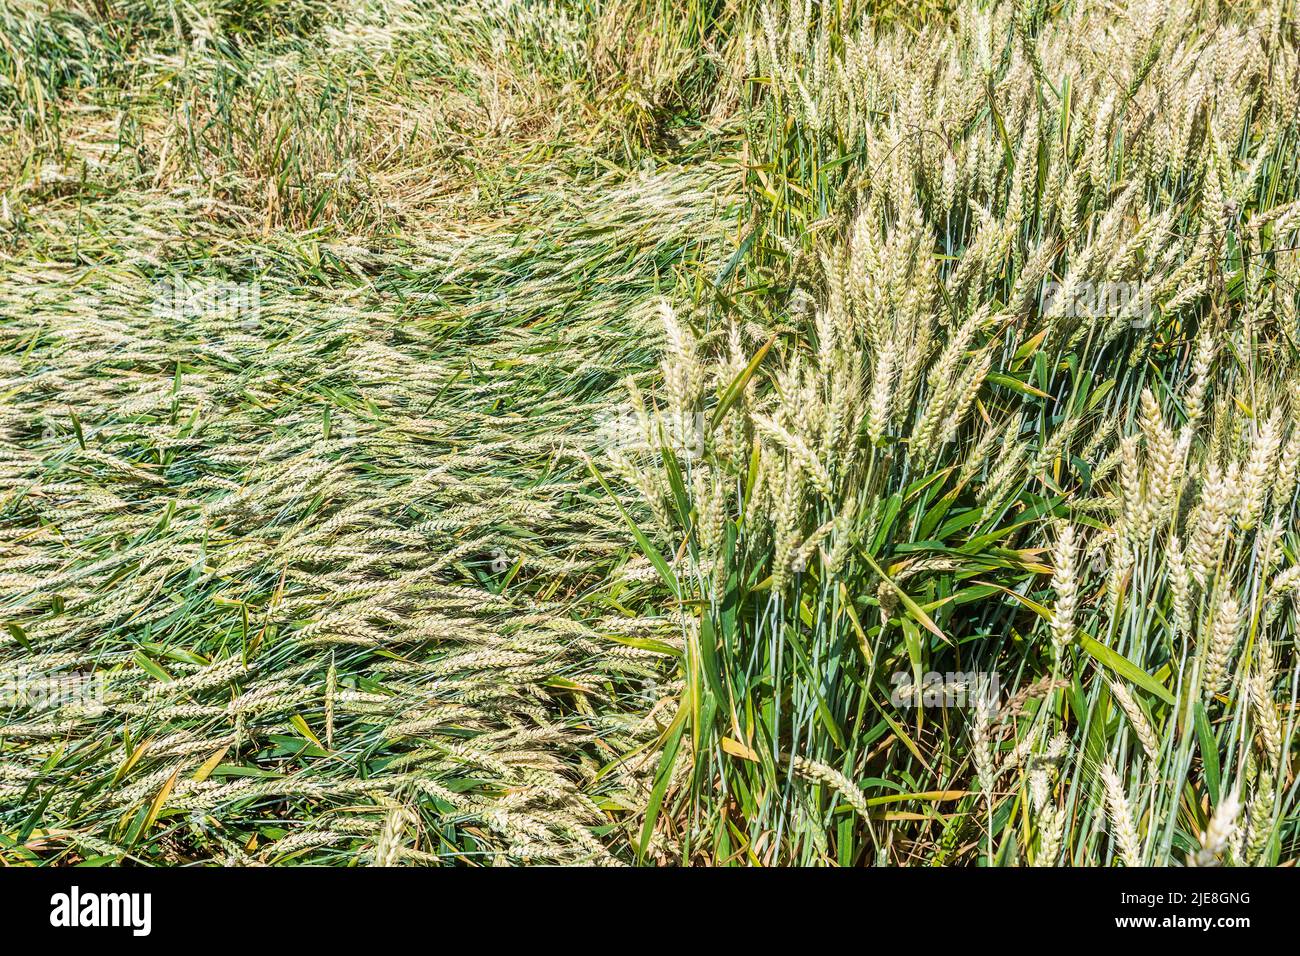 Champs de maïs avec des récoltes à ratennes après de fortes pluies torrentielles - sud-Touraine, France. Banque D'Images